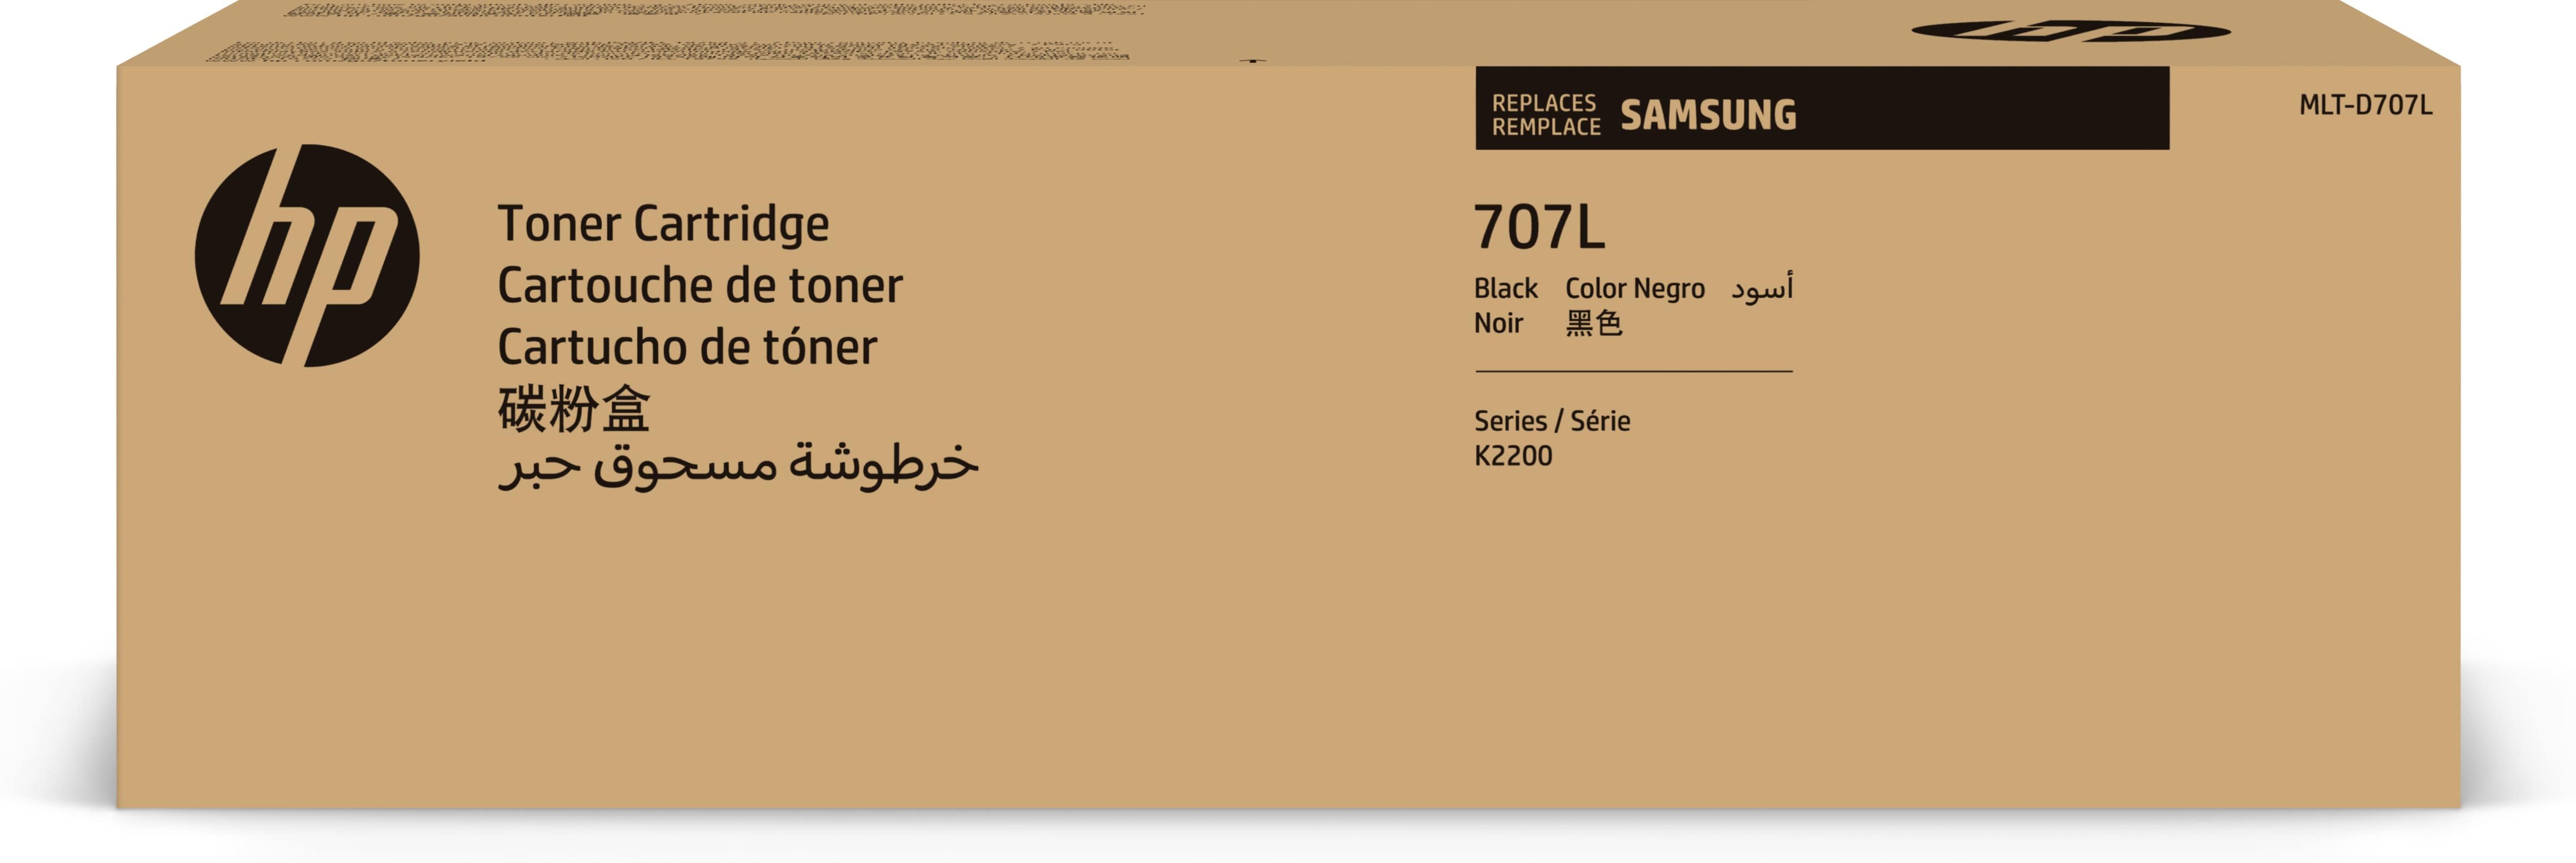 Samsung Toner MLT-D707L / SS775A Noir